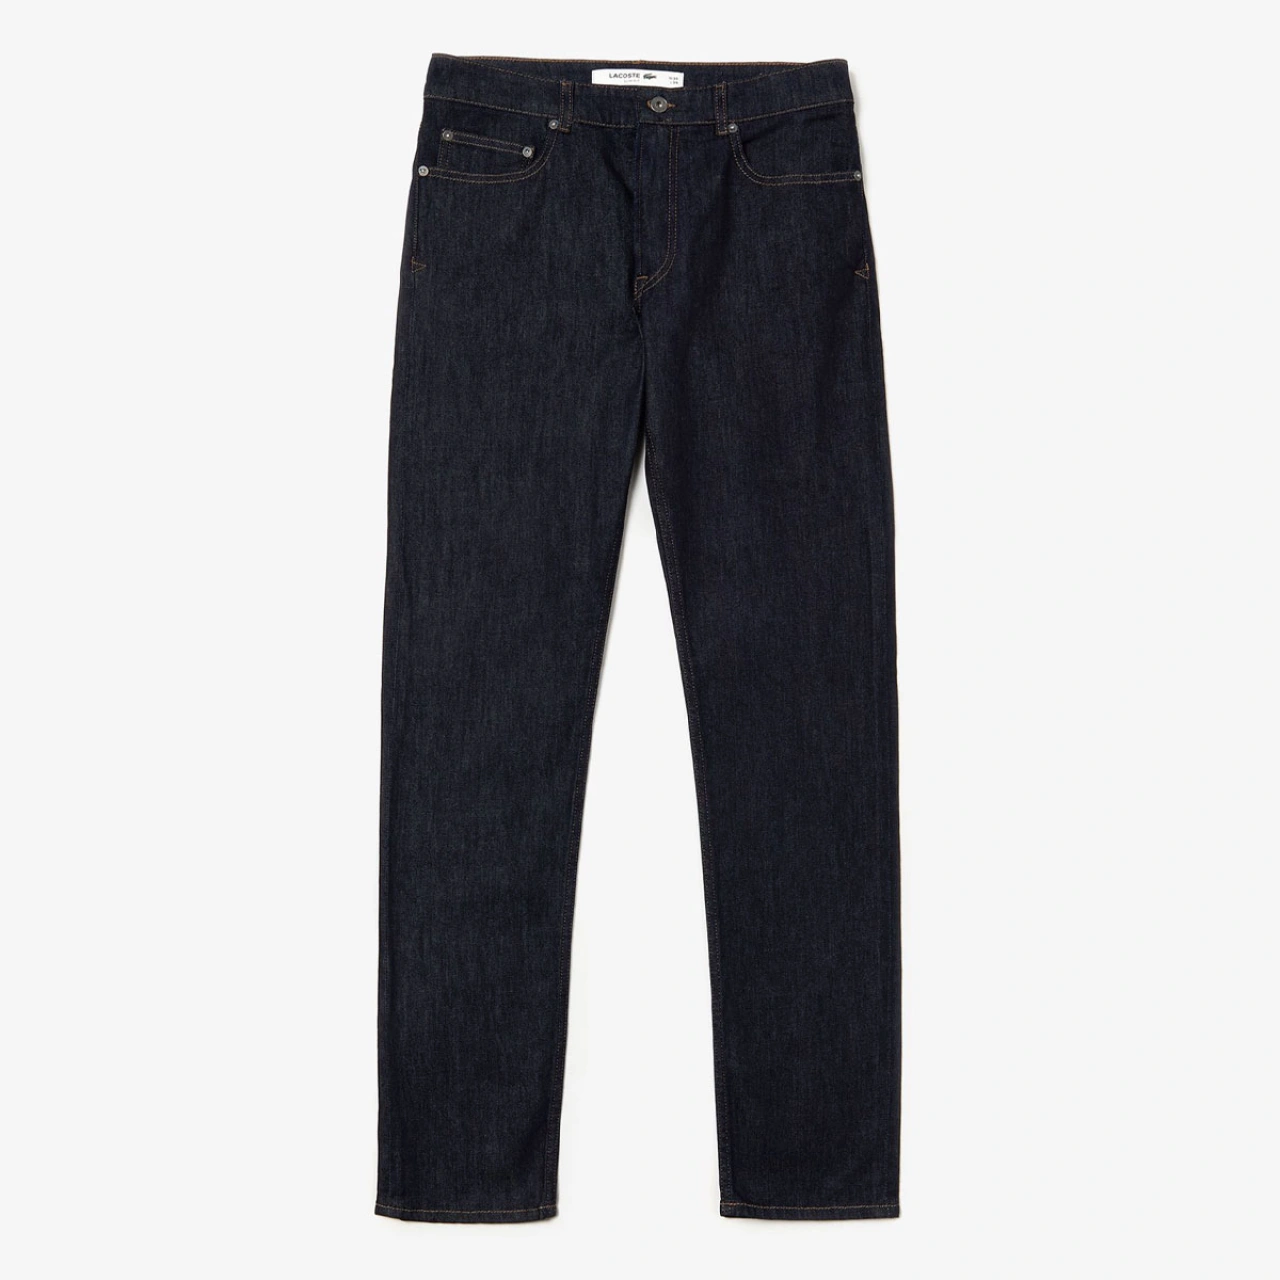 Ανδρικό Jeans παντελόνι - Lacoste - Antoniadis Stores